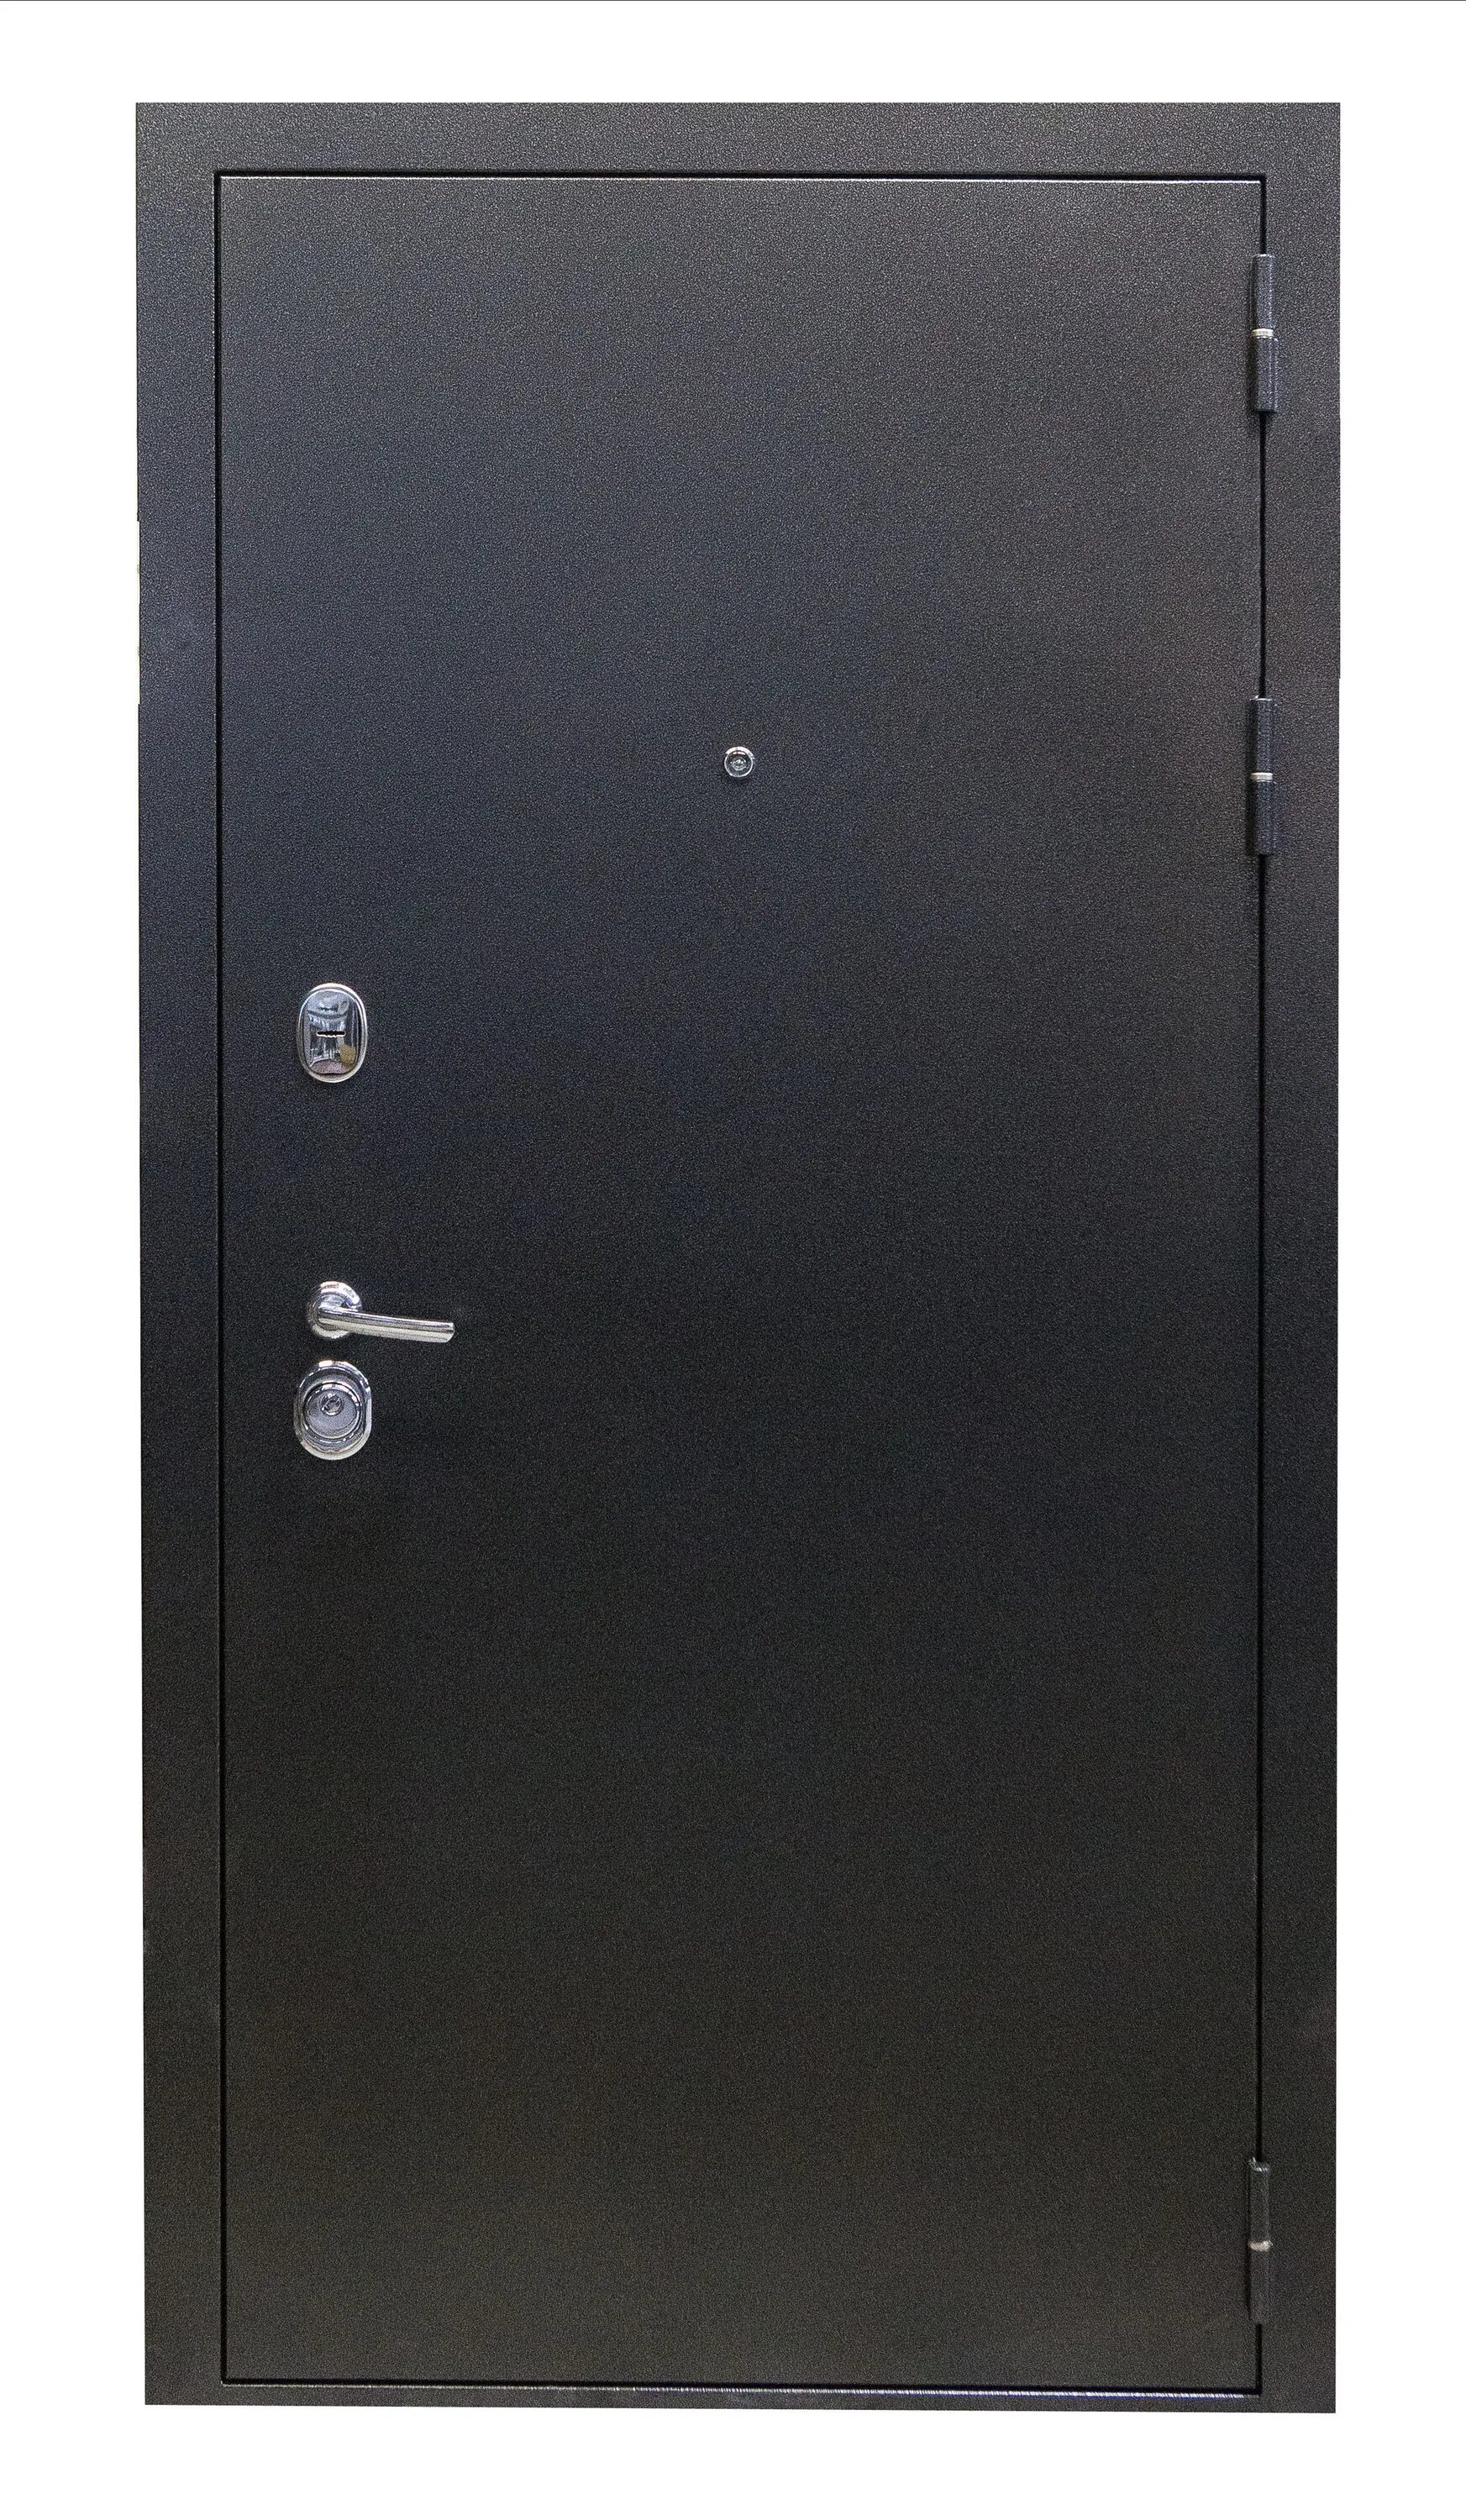 Дверь выбор м2. Дверь входная Family Eco метал/ метал. Входная металлическая дверь Onega мп2 2300*930 мм. Металлические двери 2мм сталь Норд Фокс.